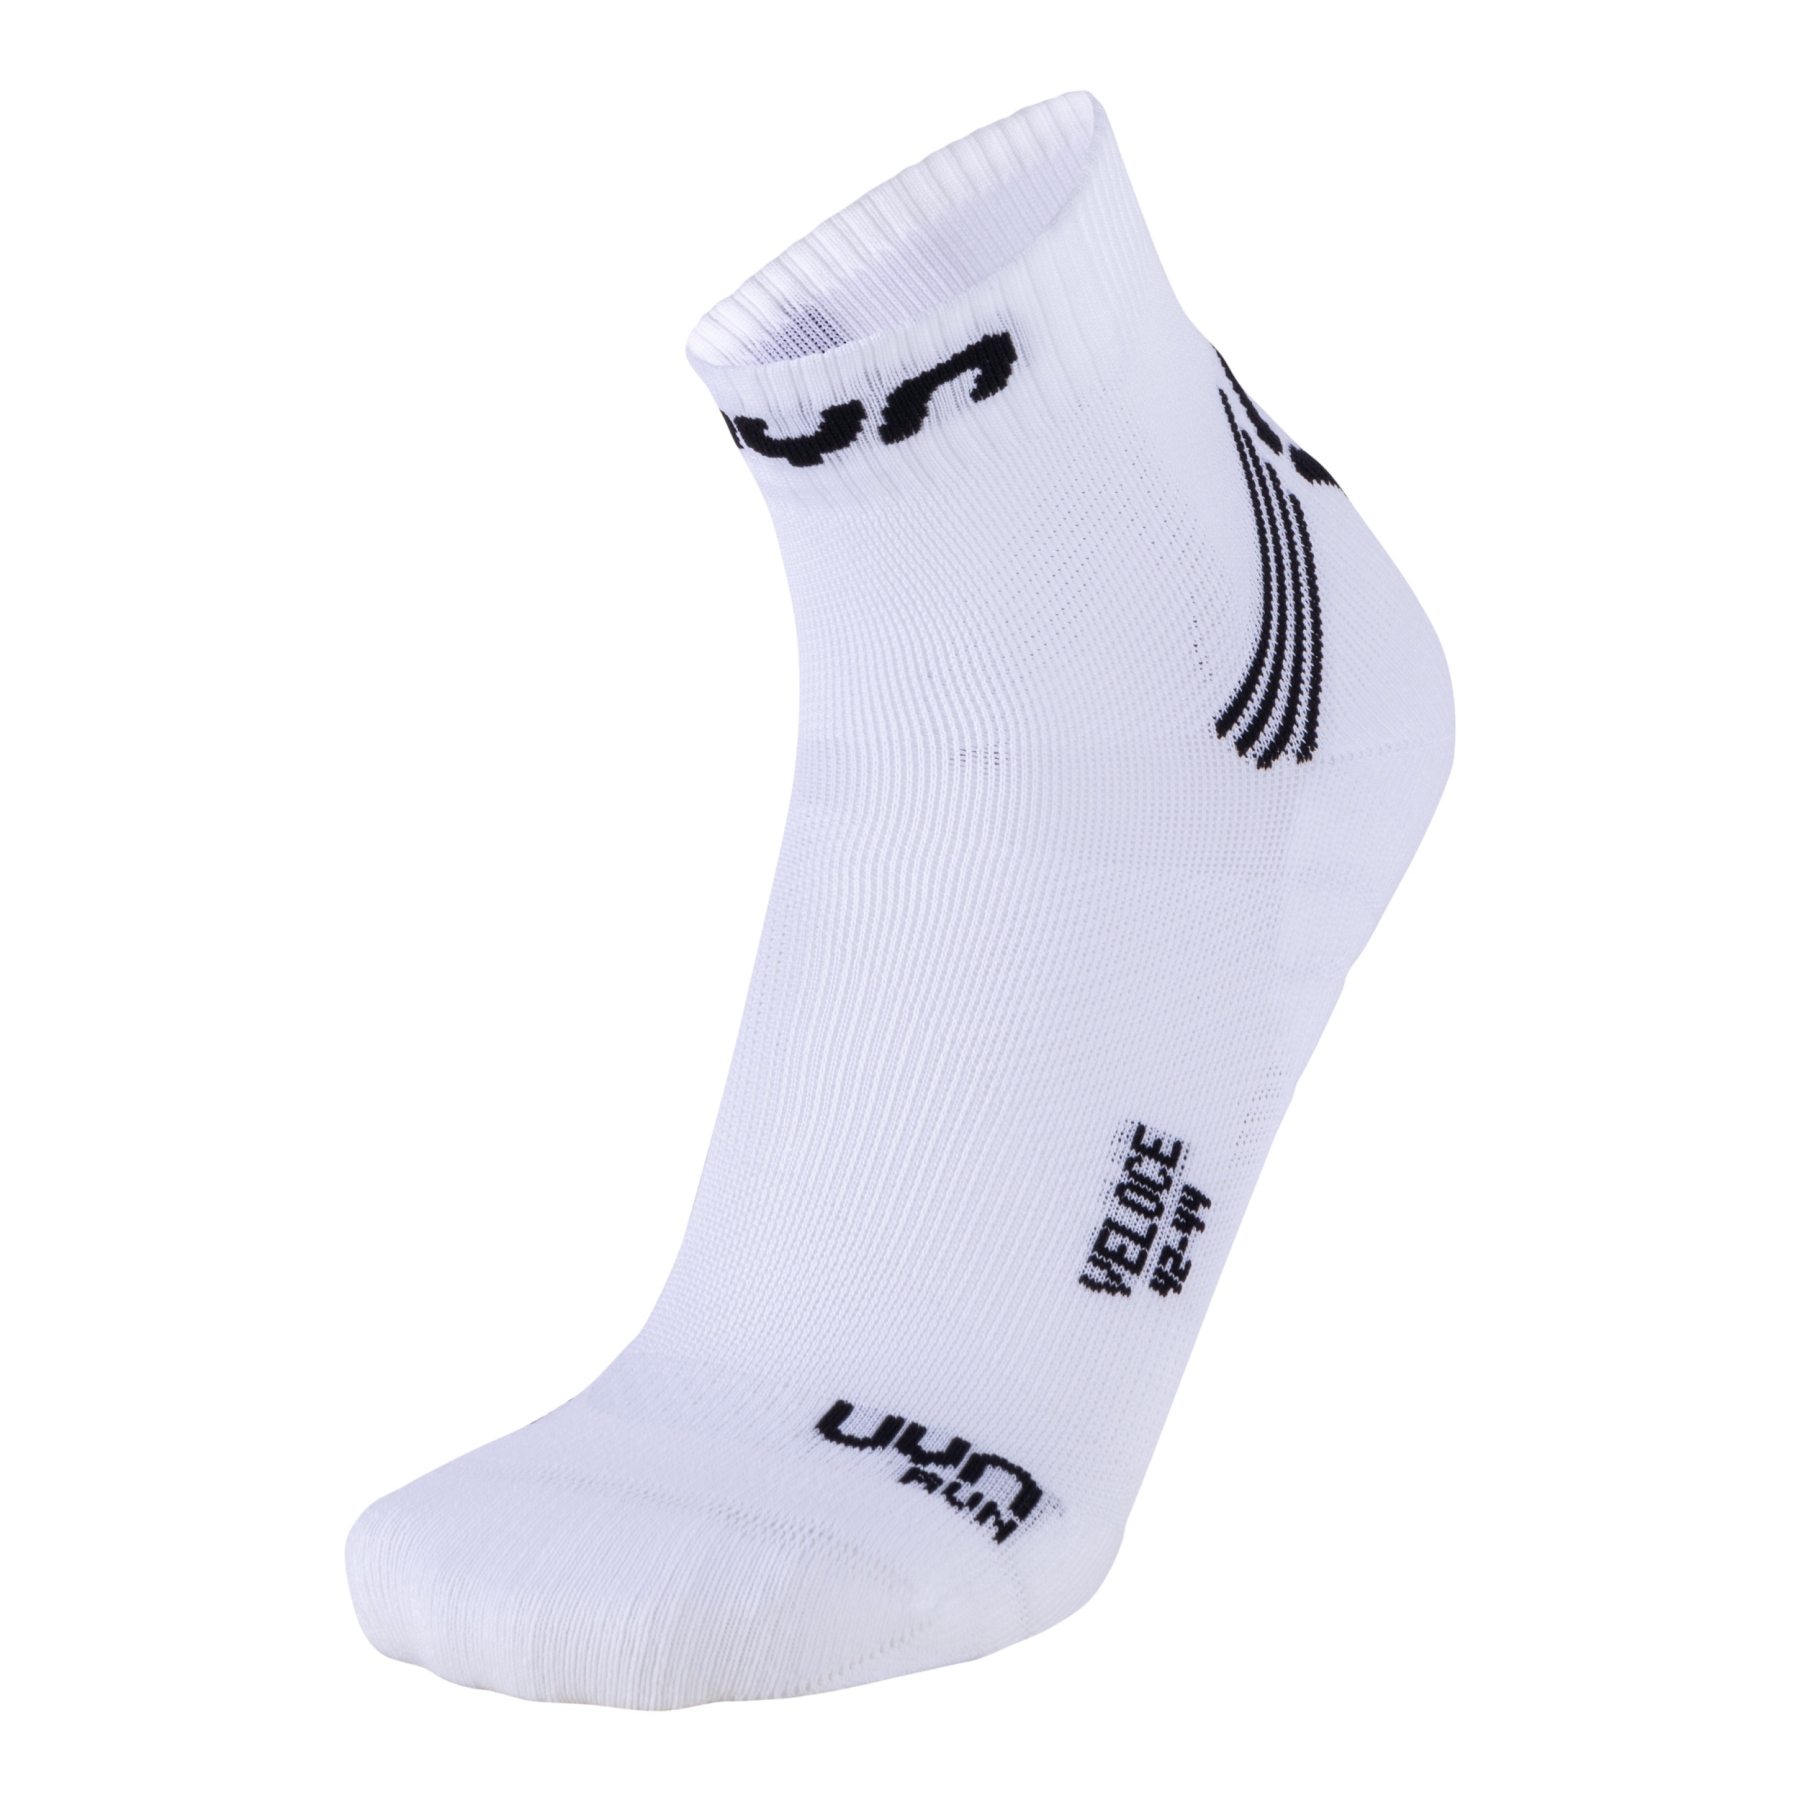 Produktbild von UYN Run Veloce Socken - Weiß/Schwarz